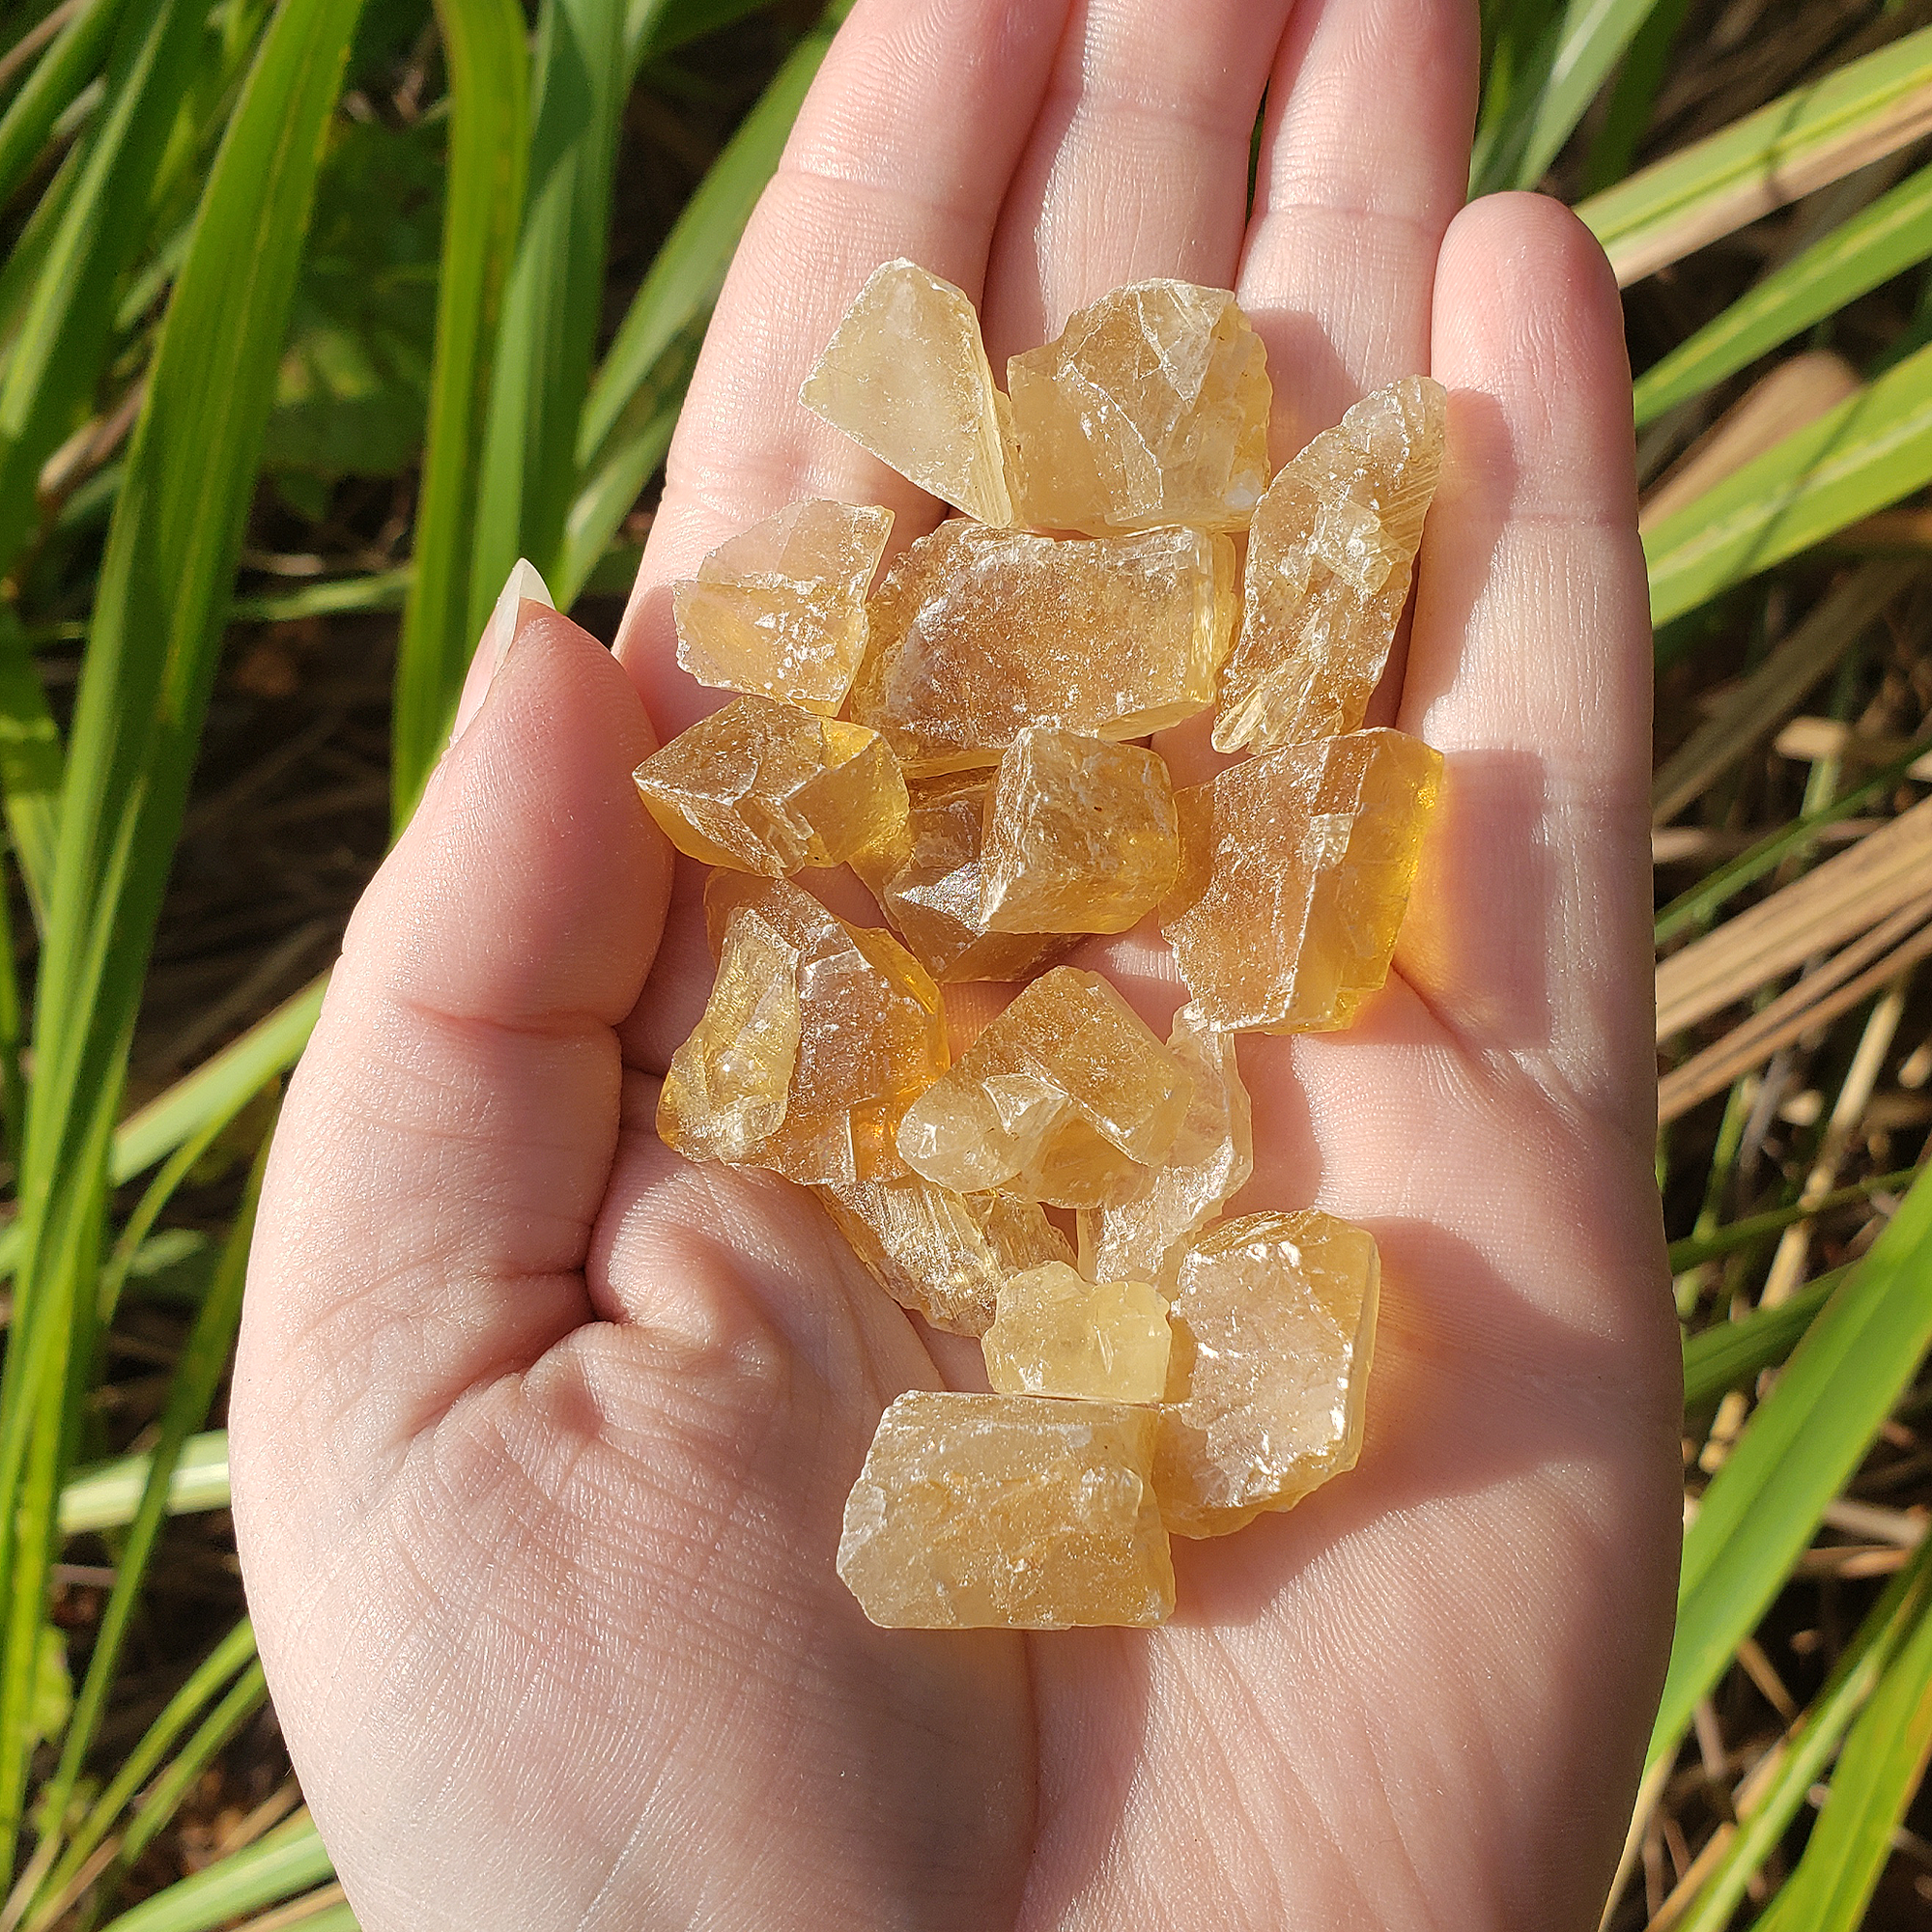 Honey Calcite Natural Raw Crystals Rough Gemstones - 3 Mini Stones - In Direct Sunlight